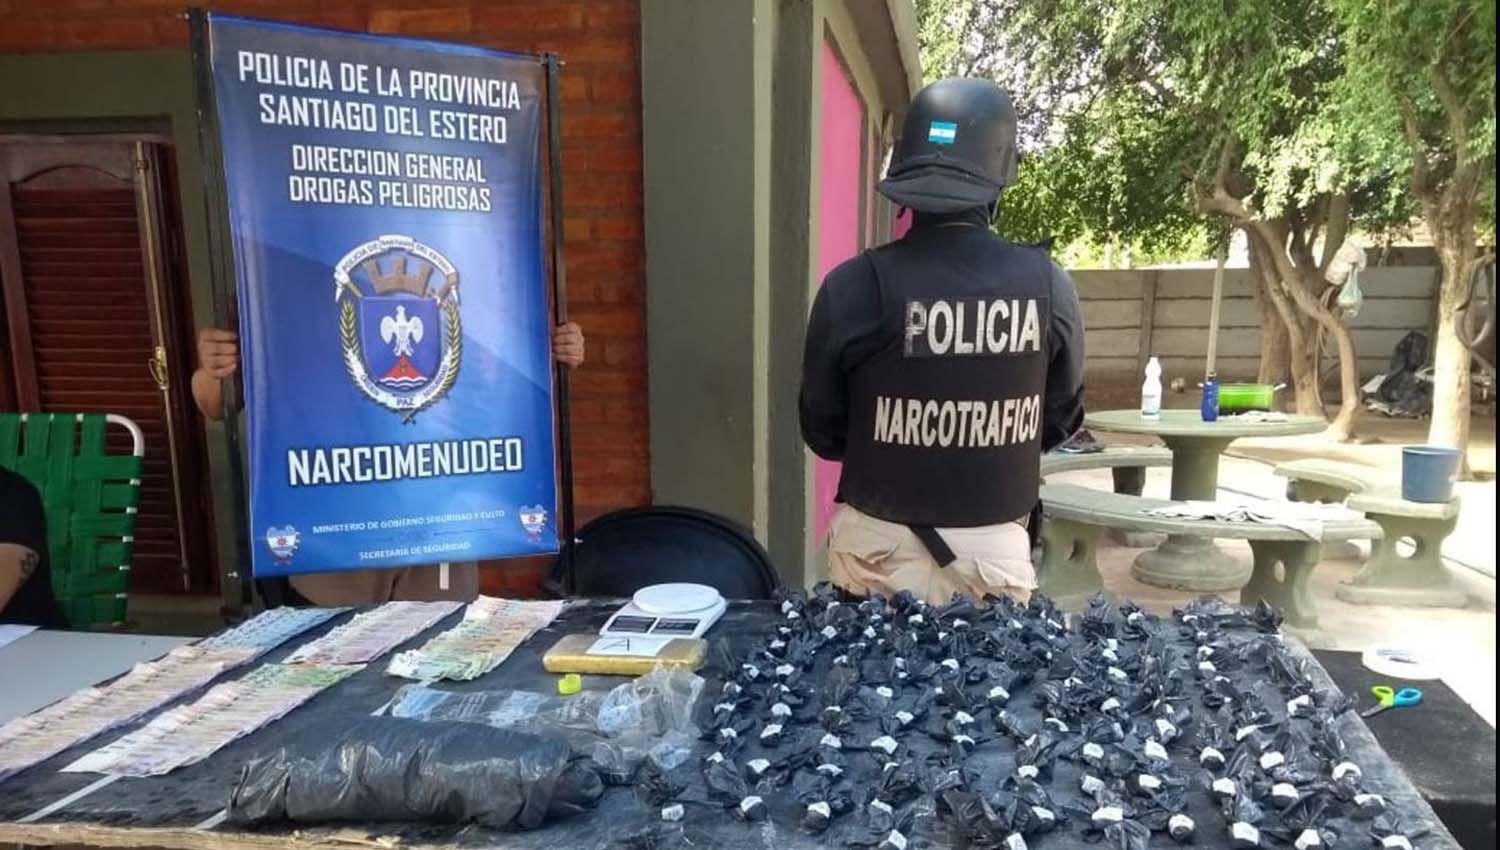 La policiacutea sorprendioacute a seis individuos que vendiacutean droga bajo la sombra de un aacuterbol